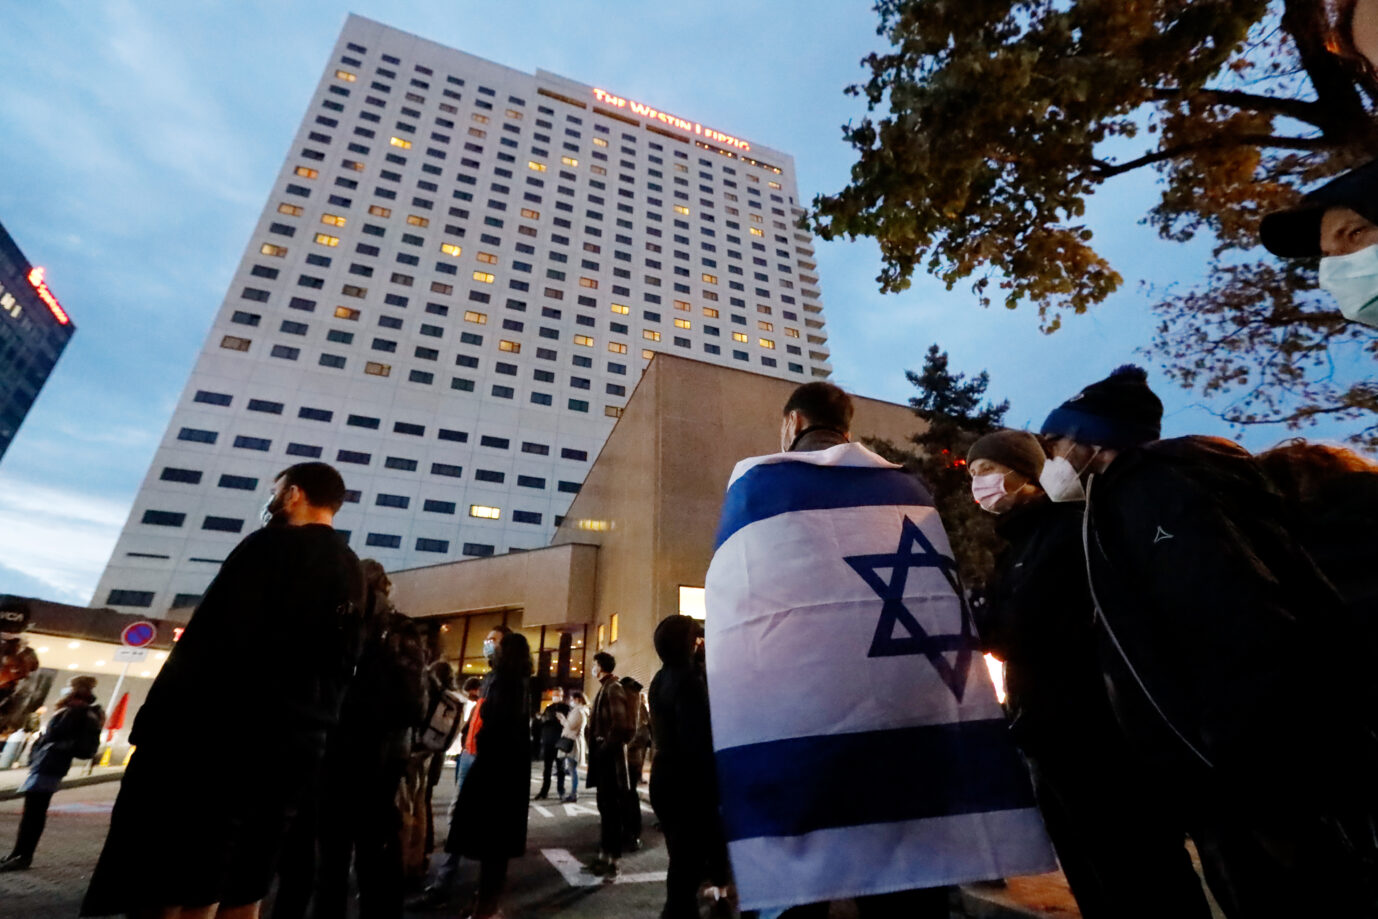 Teilnehmer einer Demonstration gegen Antisemitismus vor dem Westin Hotel Leipzig Foto: picture alliance/dpa | Dirk Knofe